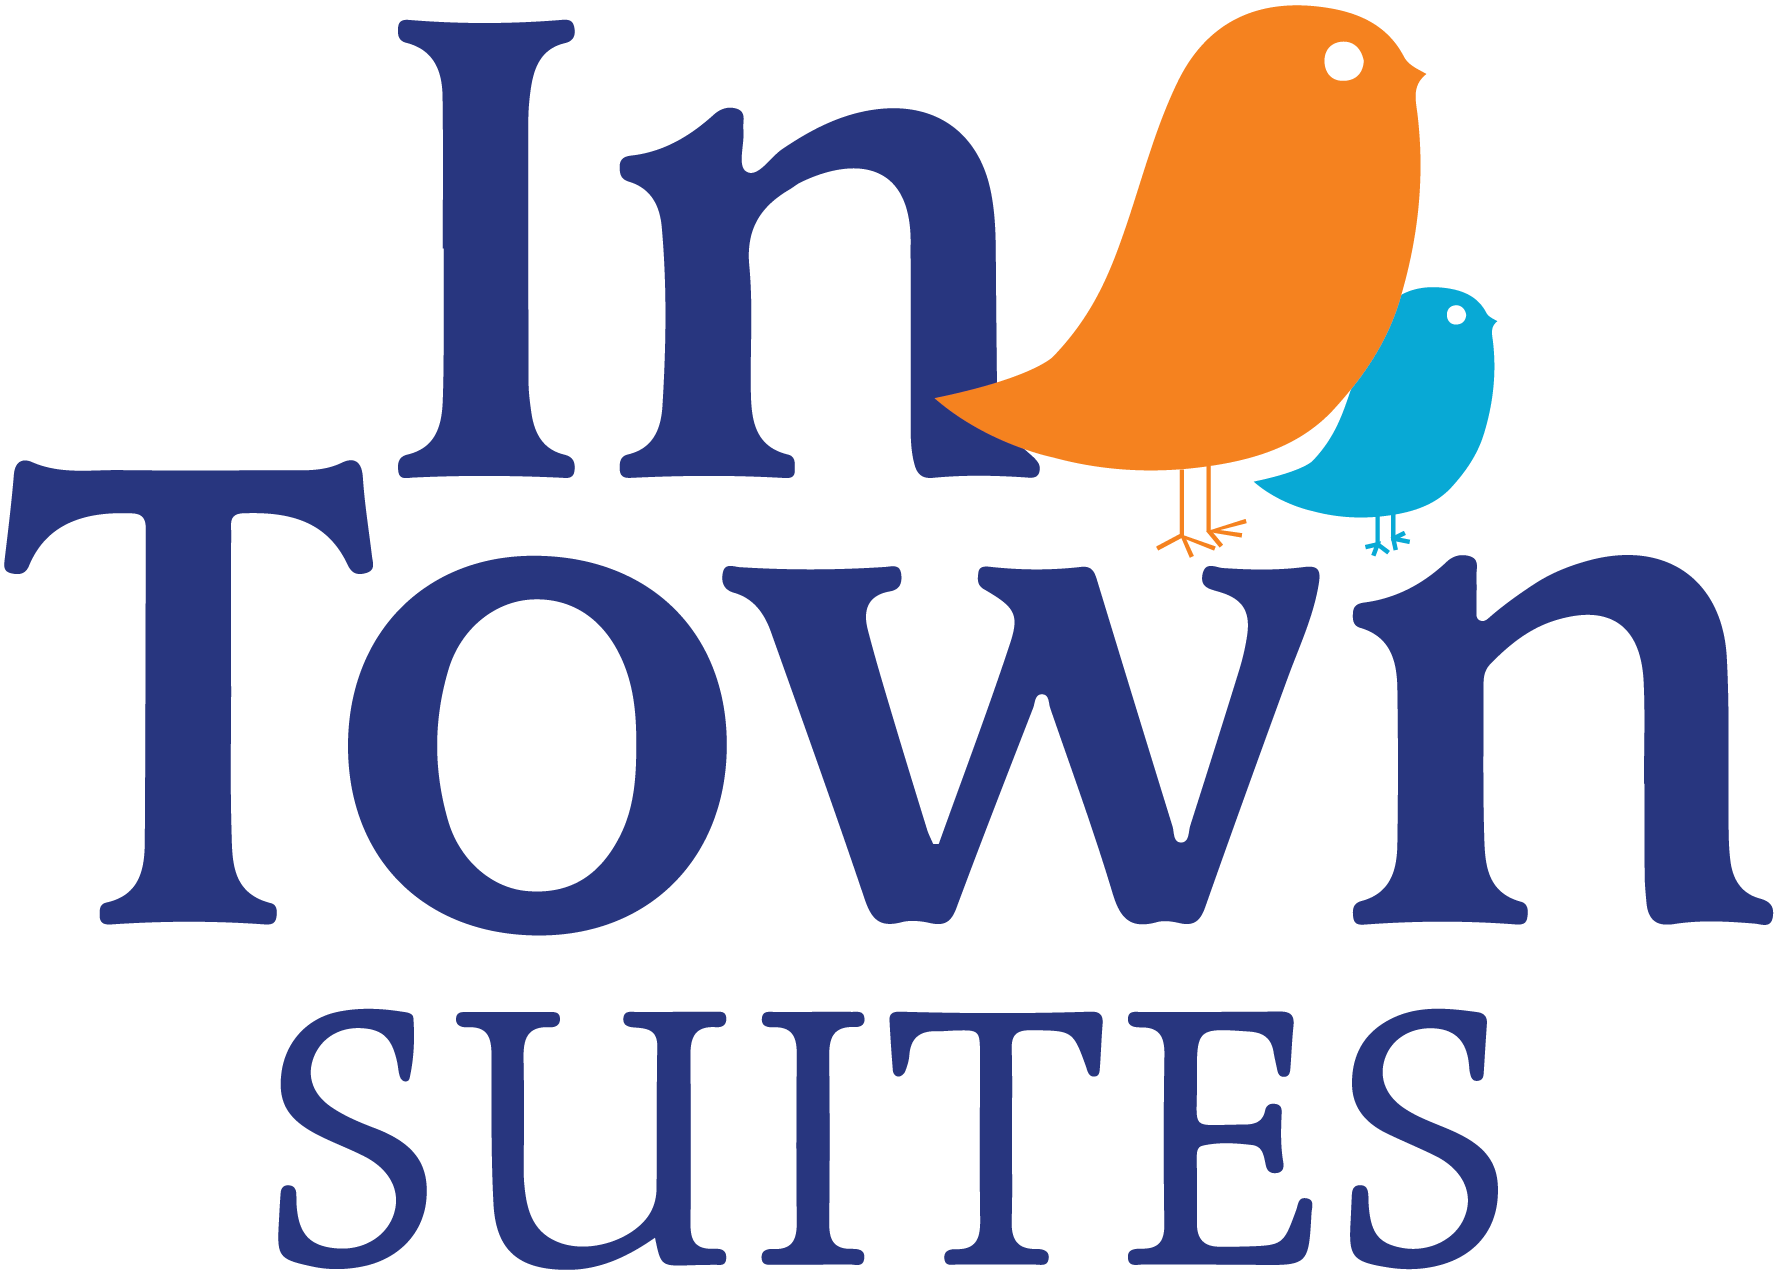 Intown Suites Logo